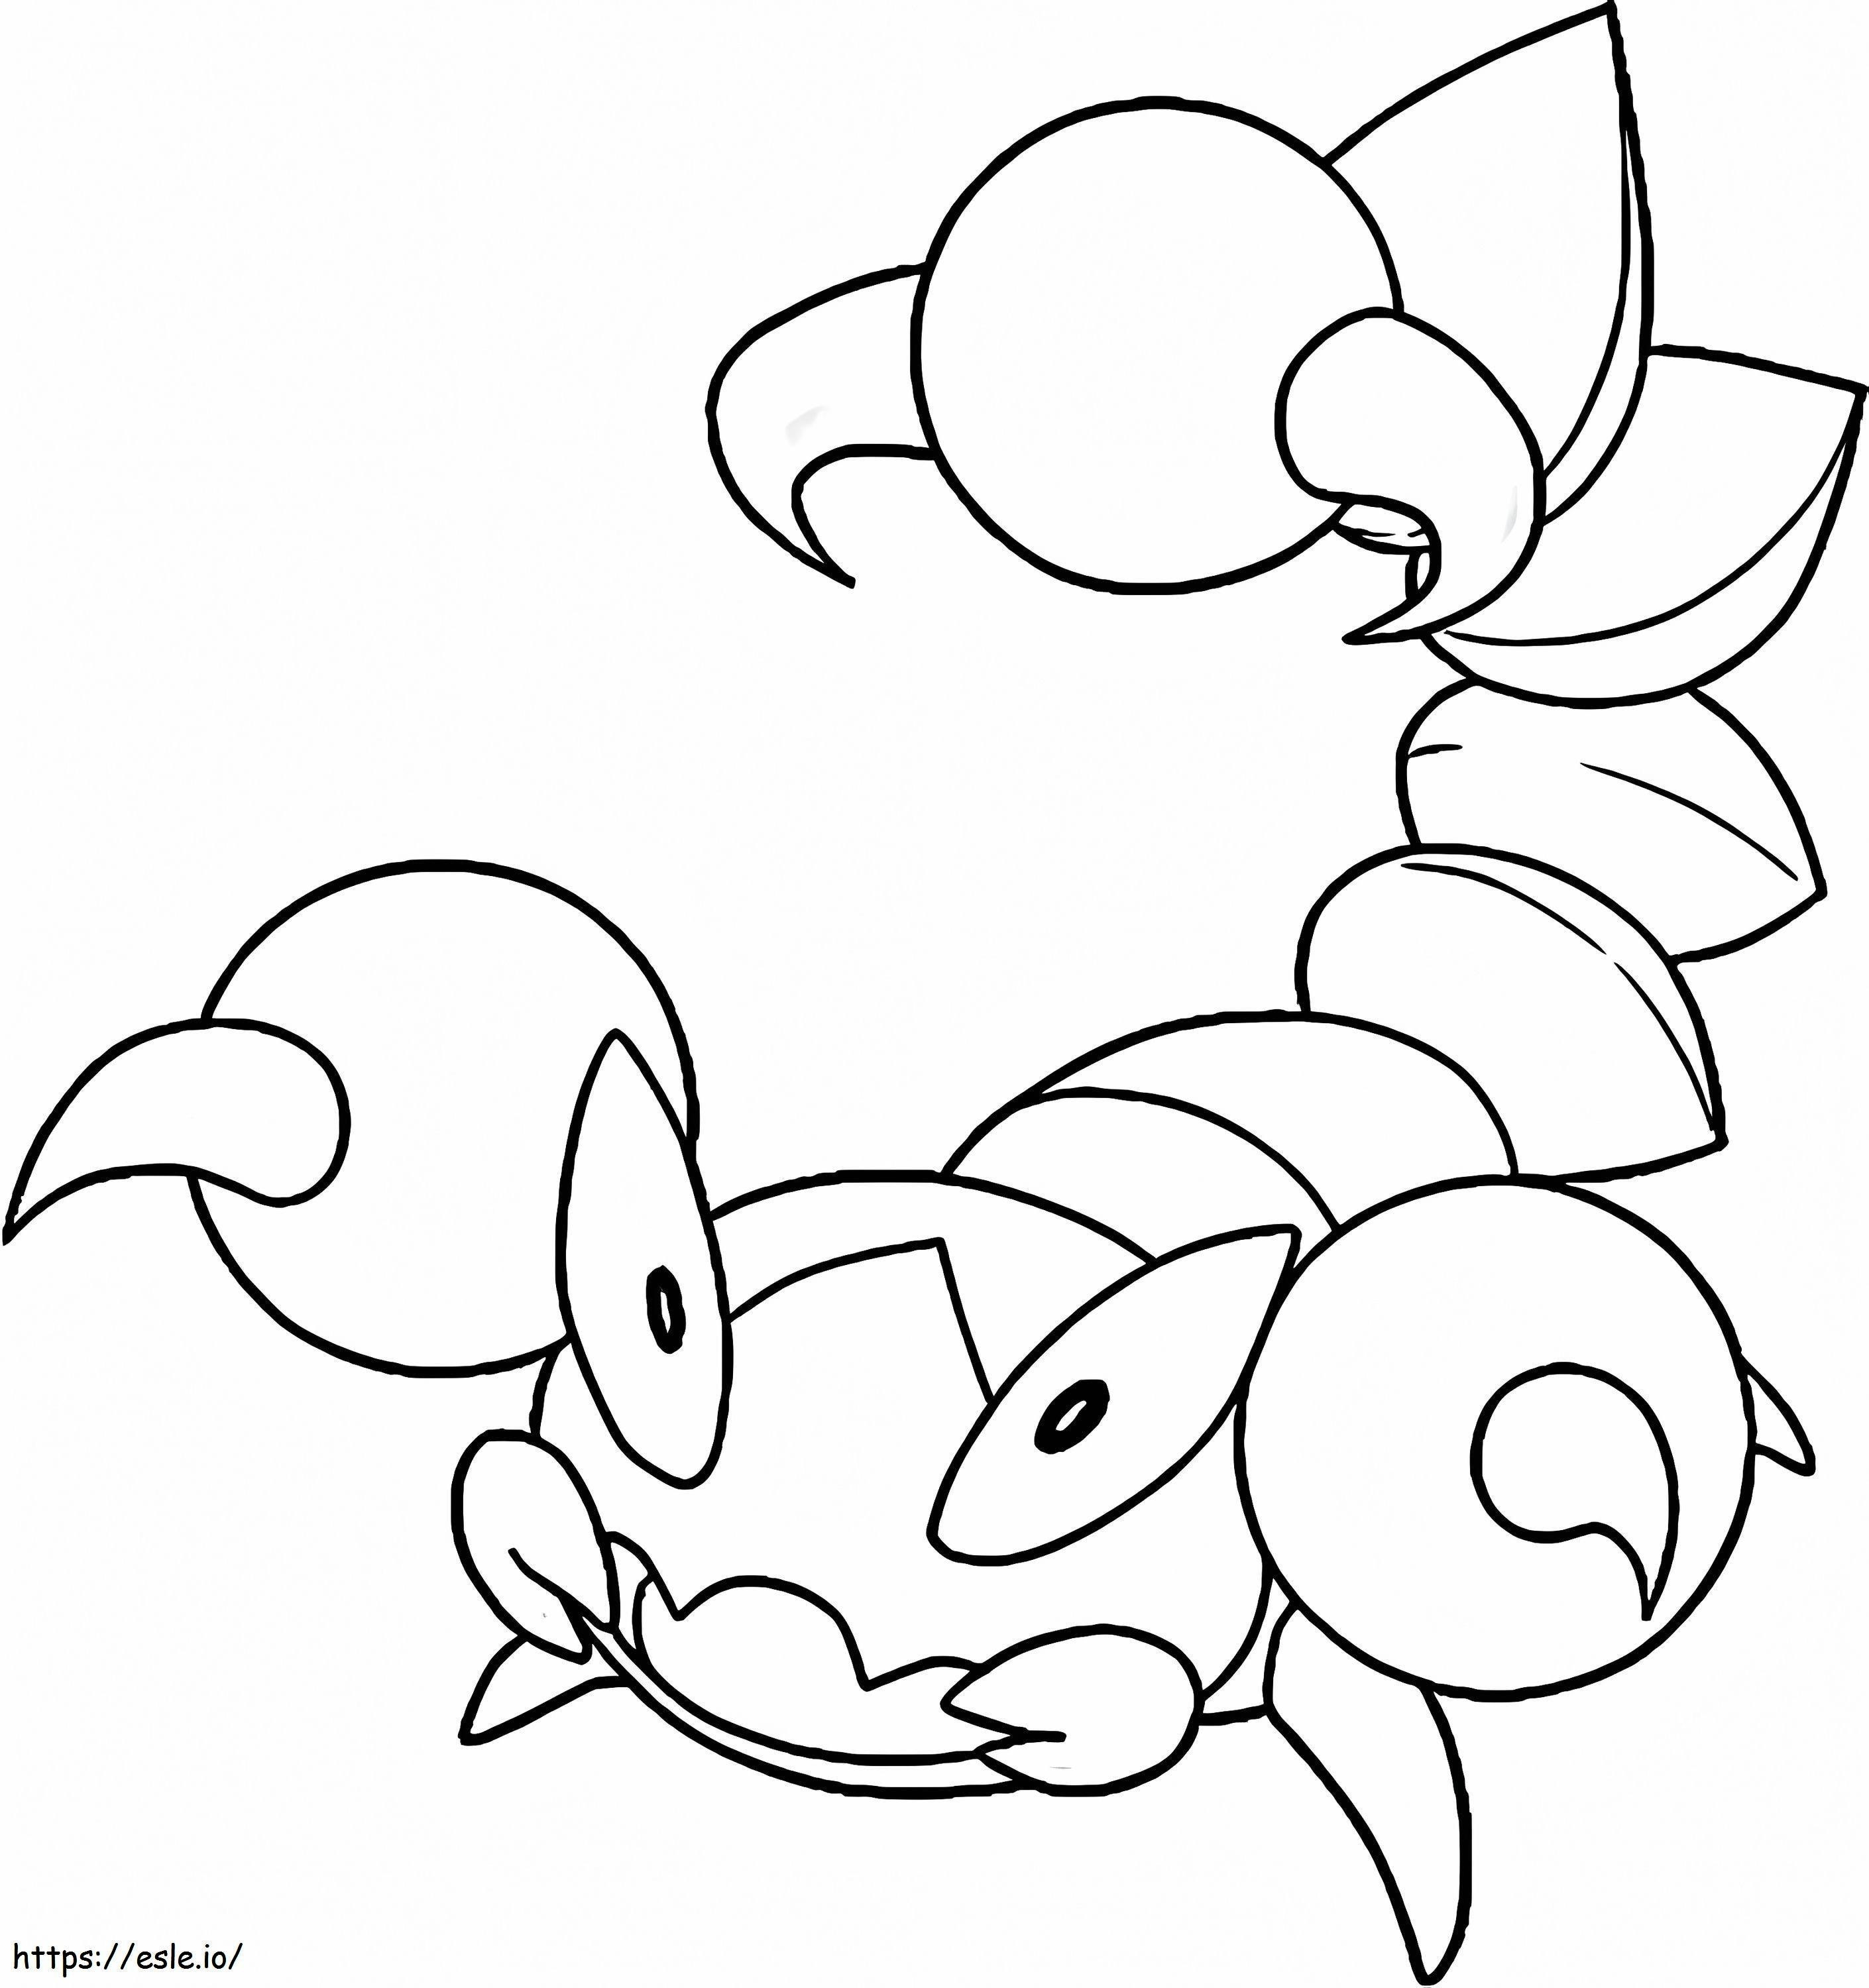 Coloriage Coquille Pokémon 1 à imprimer dessin